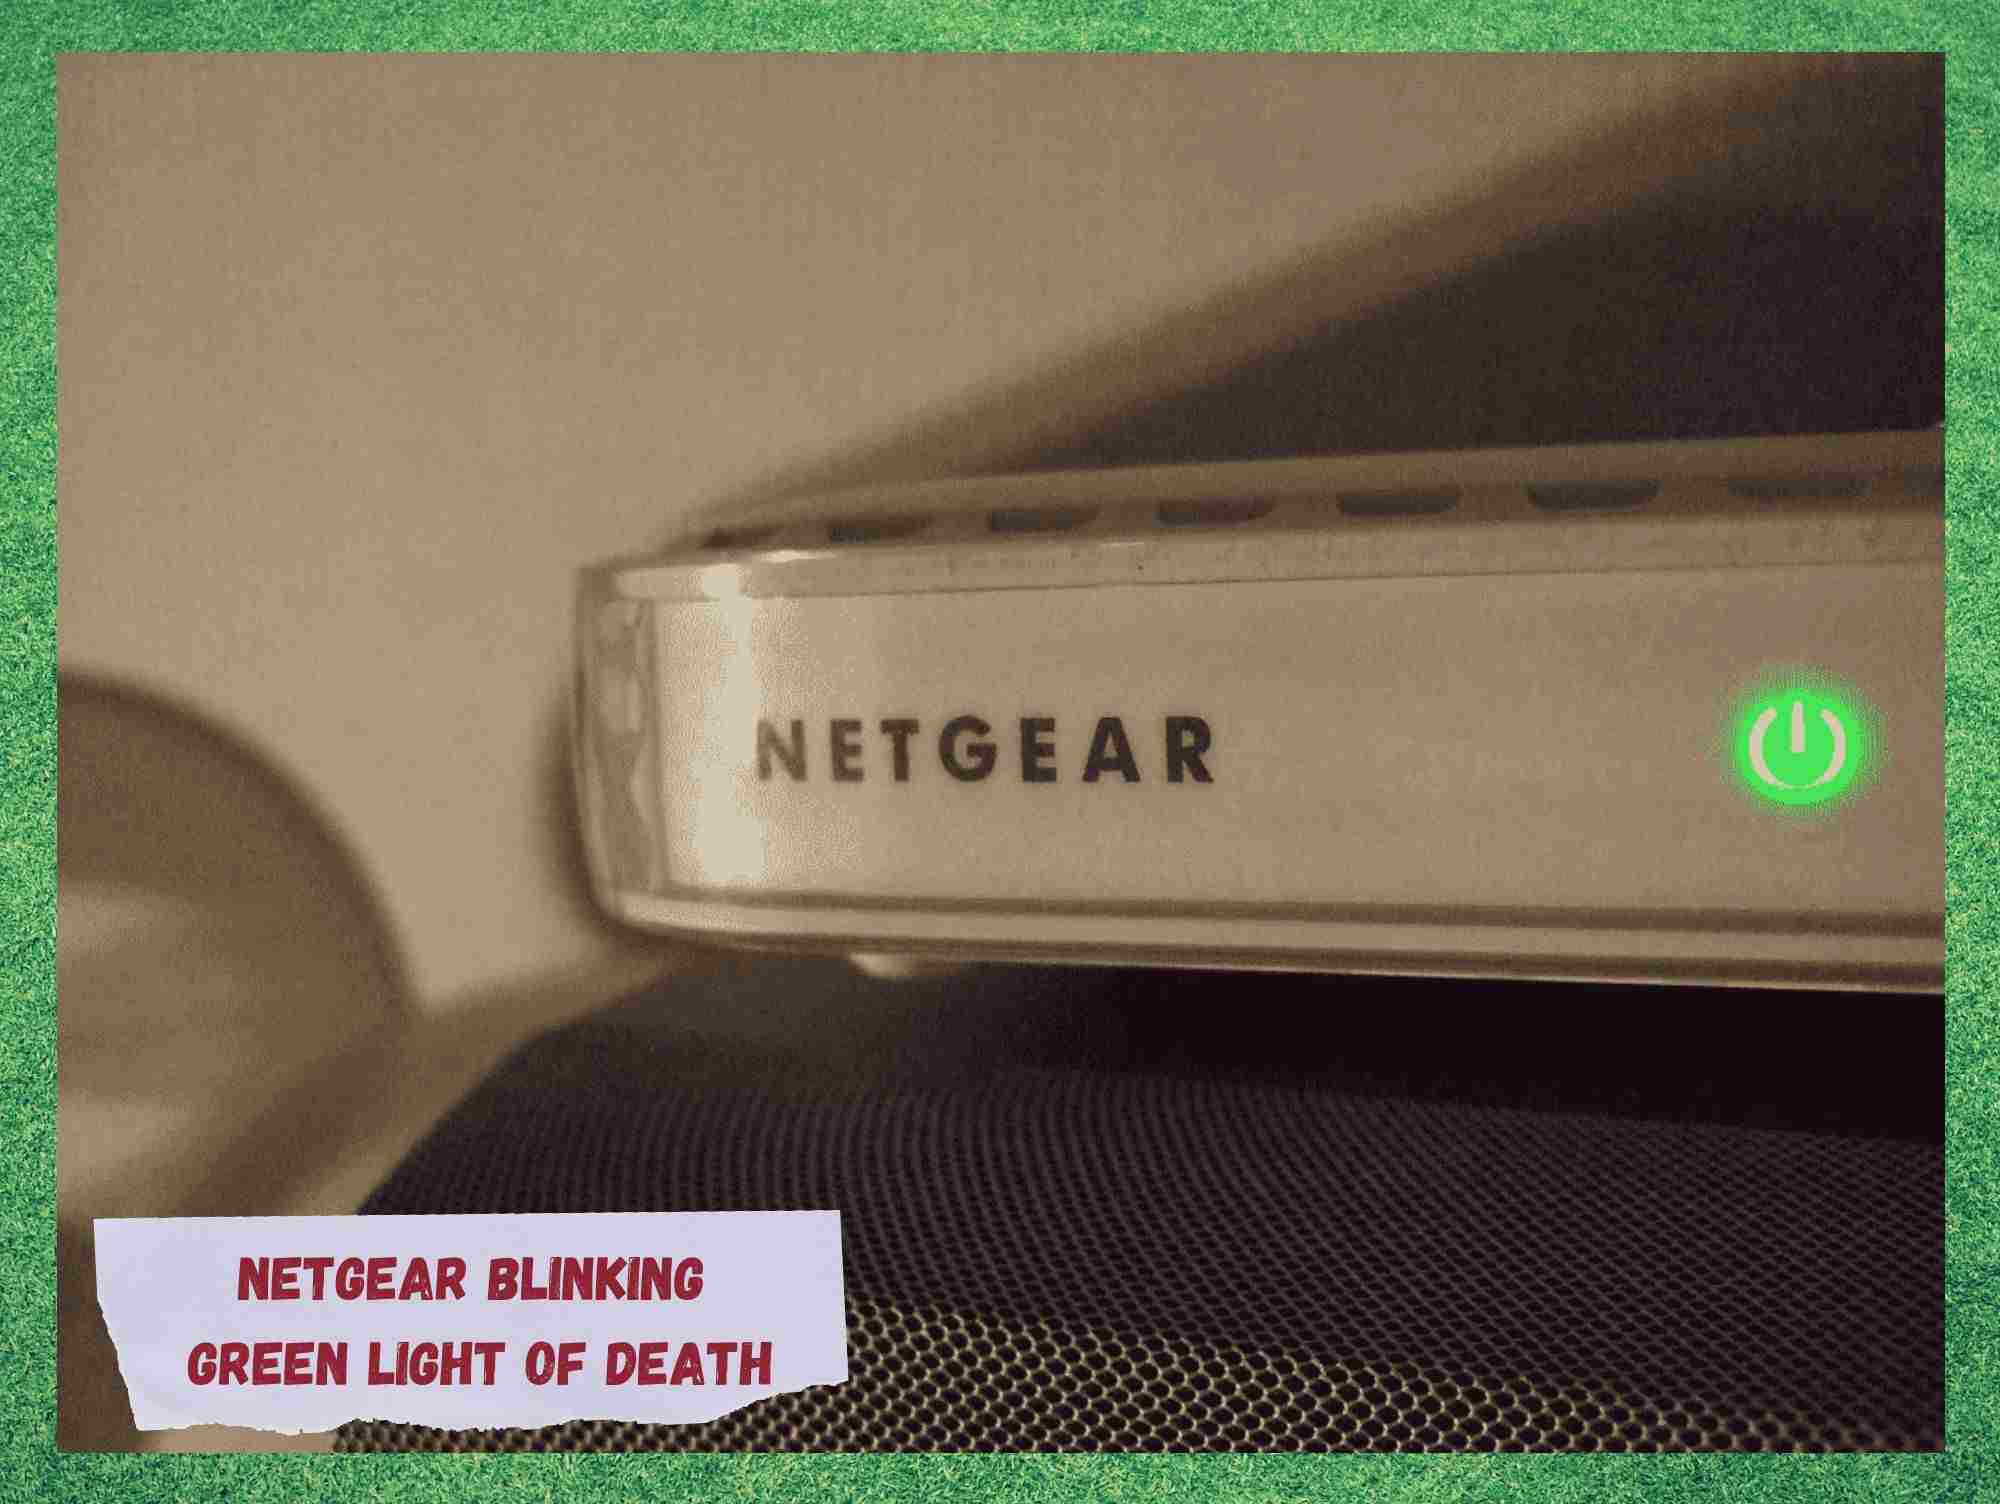 7 Léngkah Pikeun Ngalereskeun Netgear Blinking Green Light of Death